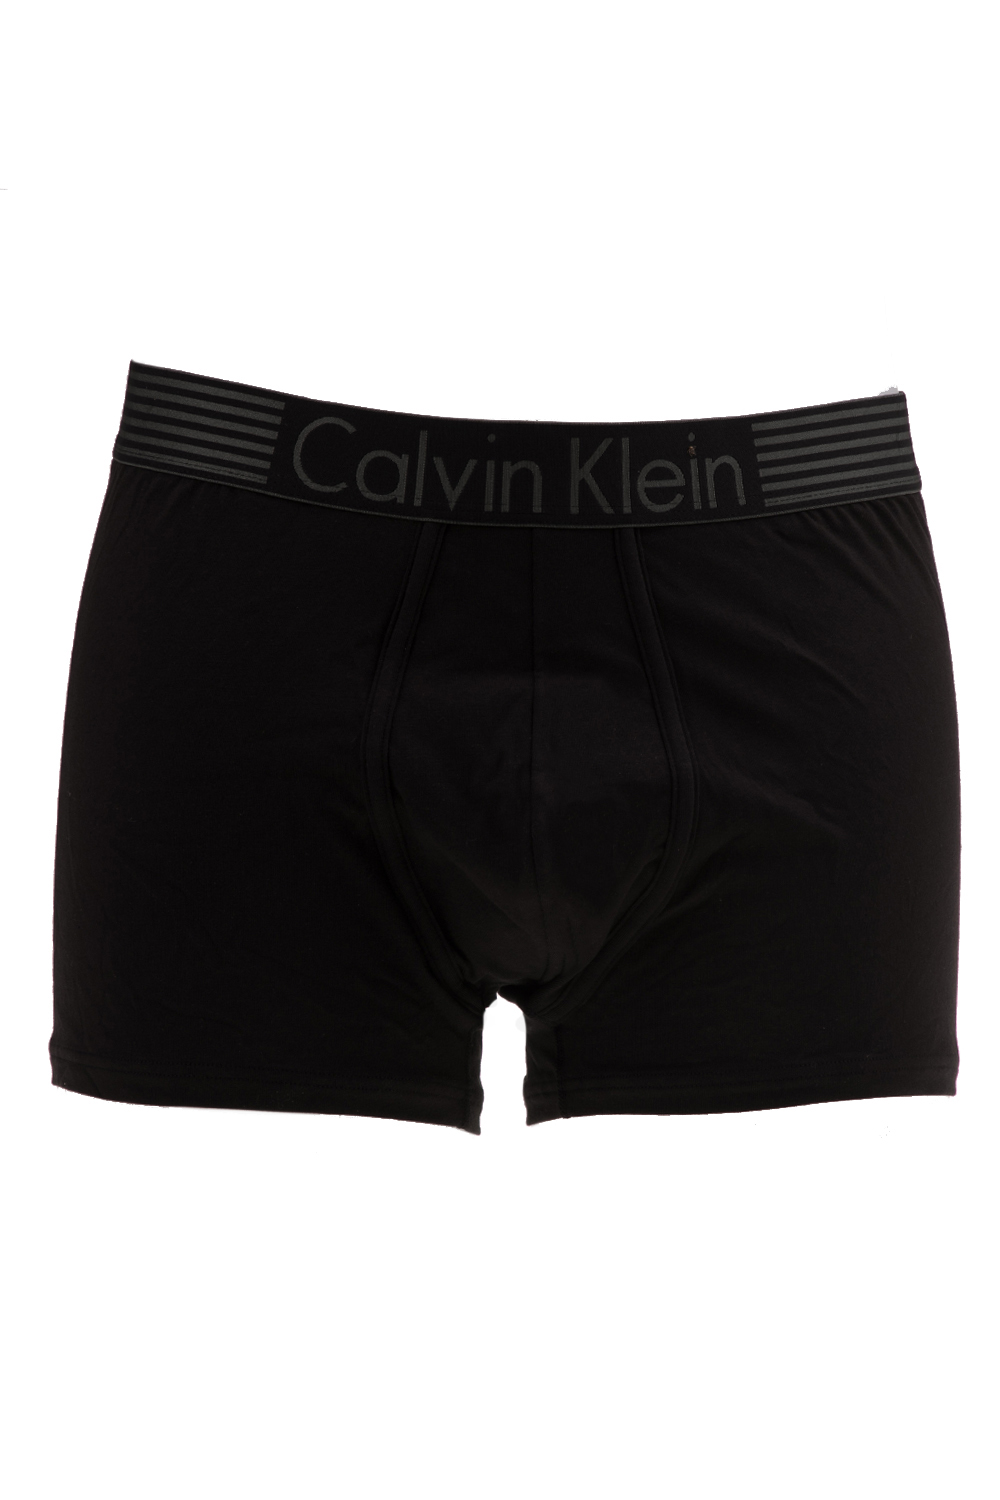 CK UNDERWEAR – Ανδρικό μποξεράκι TRUNK ck underwear μάυρο 1447570.0-0071